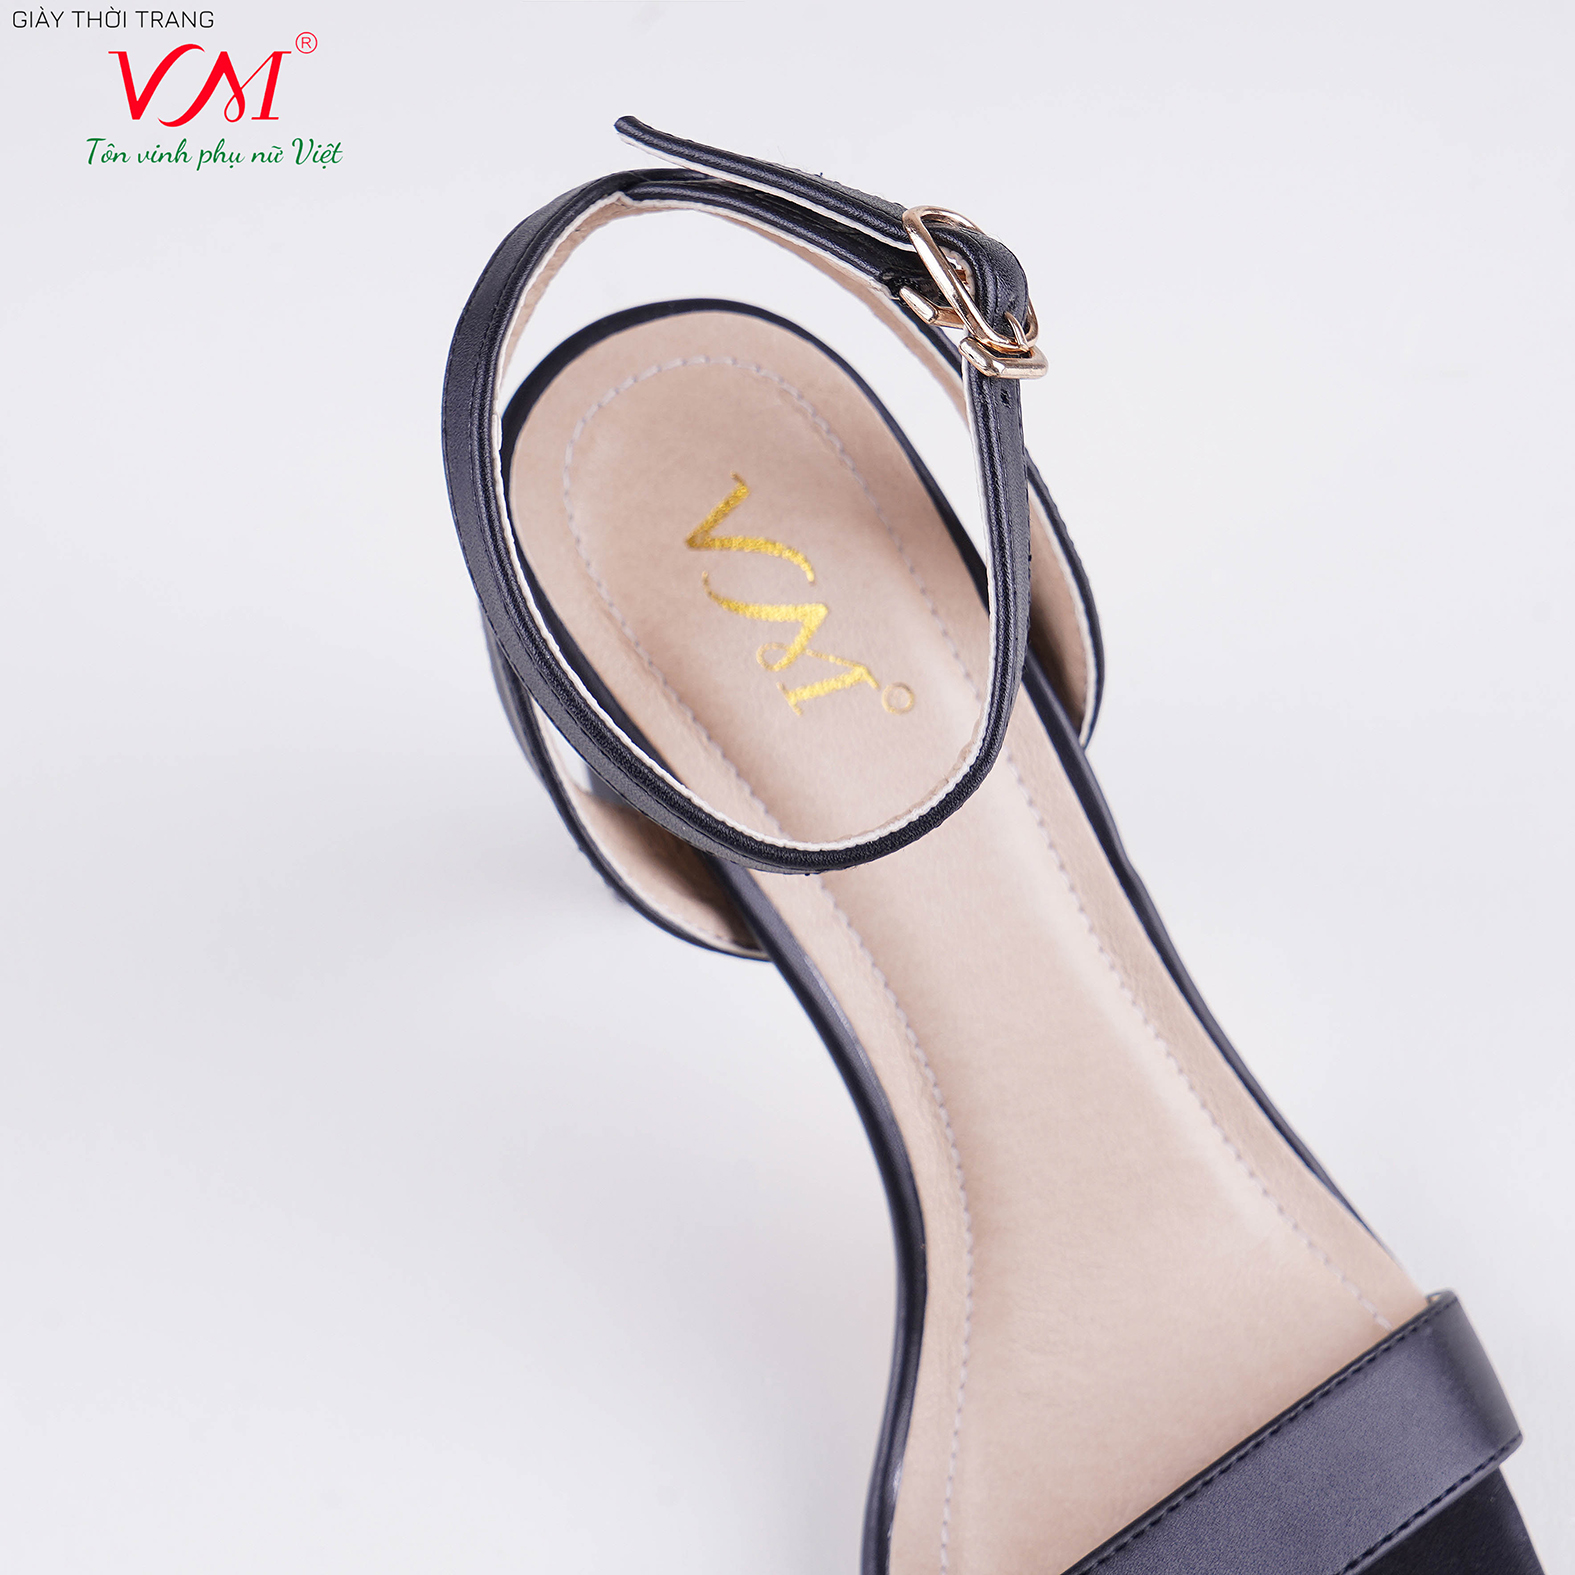 Sandal cao gót nữ, chiều cao gót 9CM, da Tổng hợp êm ái, bền chắc và thời trang. Mũi Vuông, gót Oval sơn tĩnh điện, sang trọng và chắc chắn, thiết kế hiện đại, tinh tế, thời trang: SD.MT02.9F